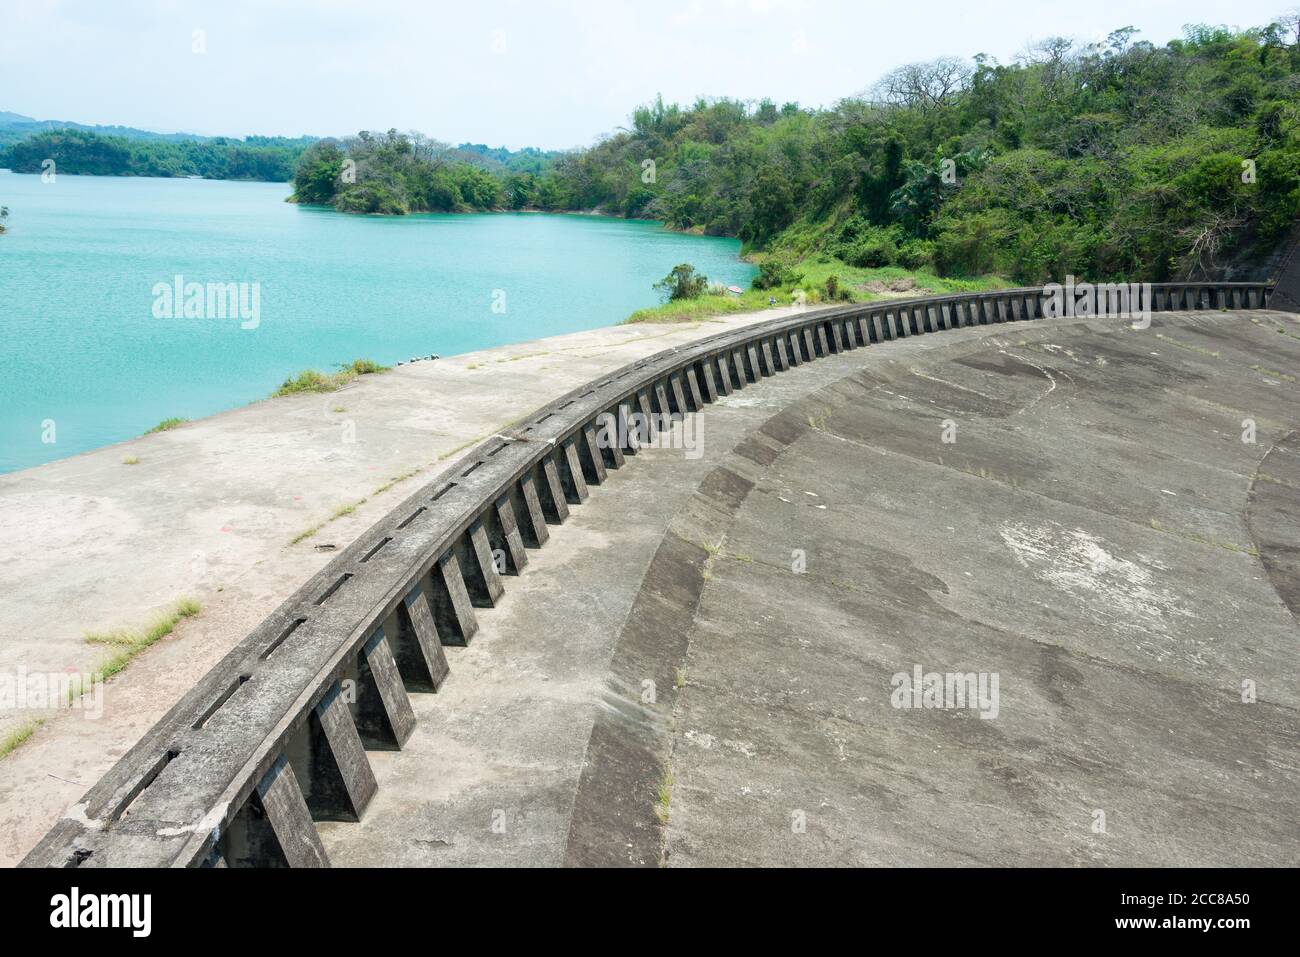 Région pittoresque du réservoir de Wusanto dans le district de Guantian, Tainan, Taïwan. Le barrage a été conçu par Yoichi Hatta et construit entre 1920 et 1930. Banque D'Images